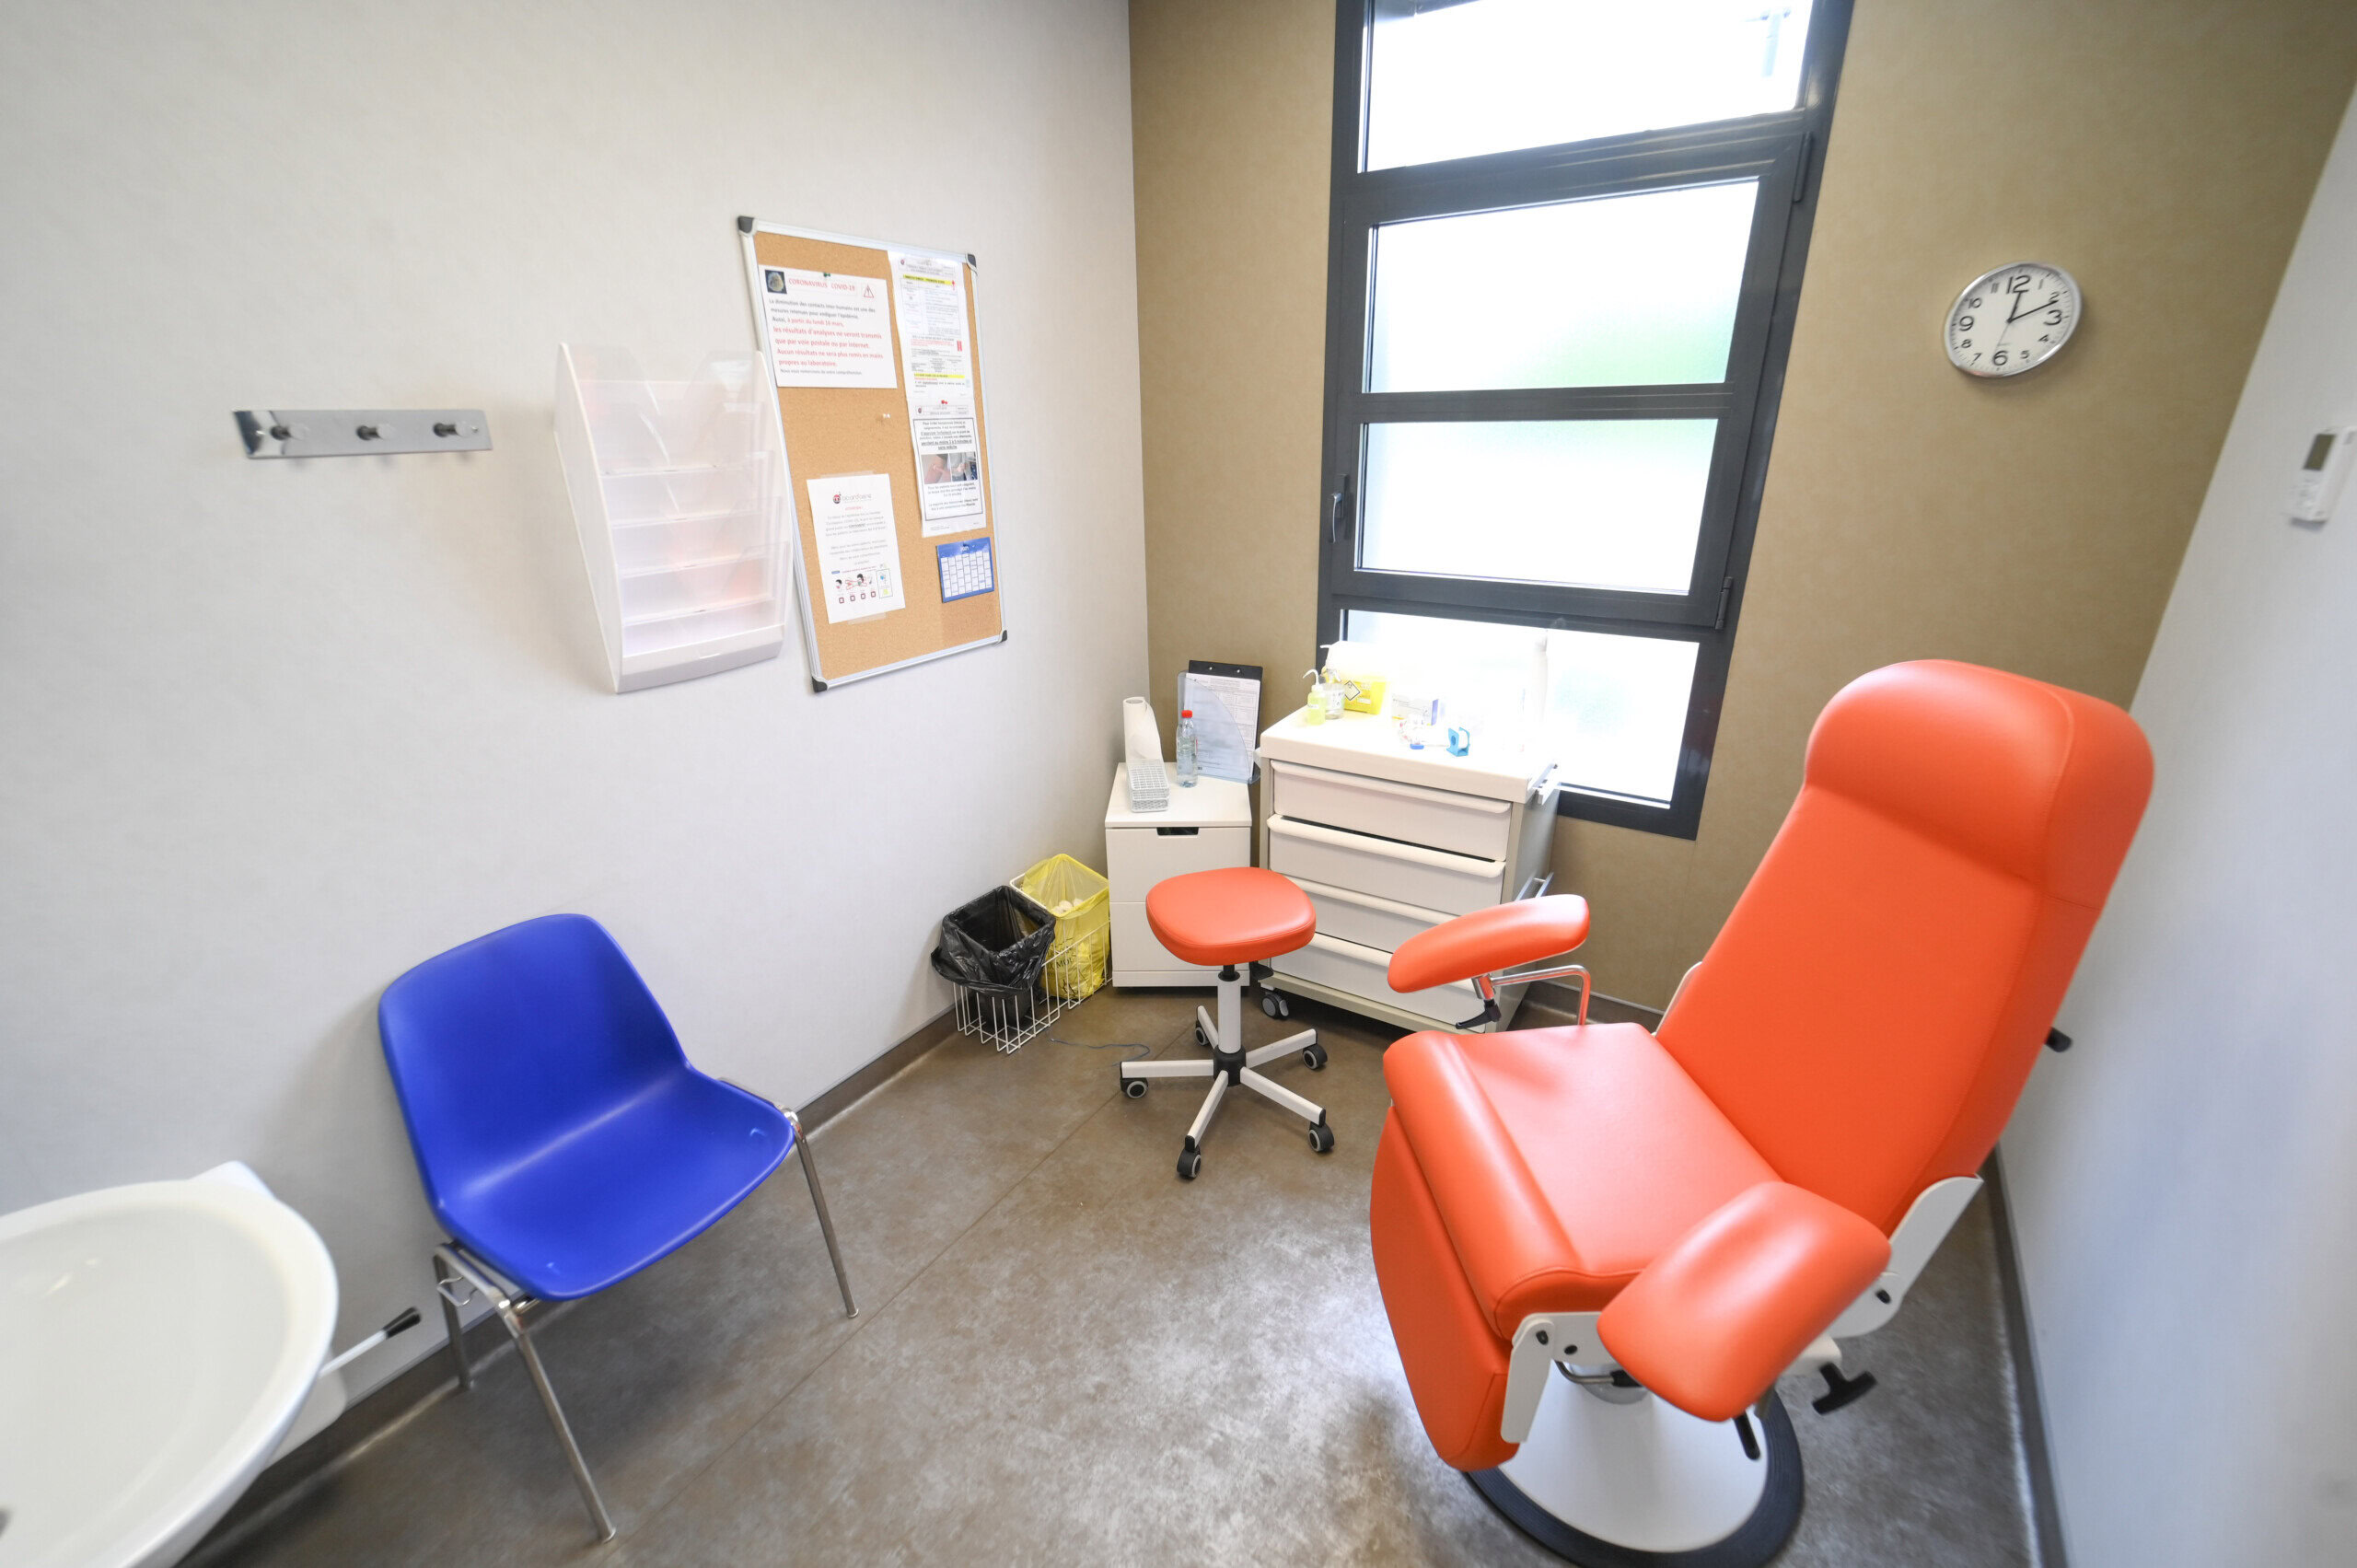 Une salle d'examen médical du Laboratoire Balan Bio Ard'Aisne comprend une chaise réglable rouge, une chaise latérale bleue, un petit bureau avec des fournitures médicales, une horloge au mur et un